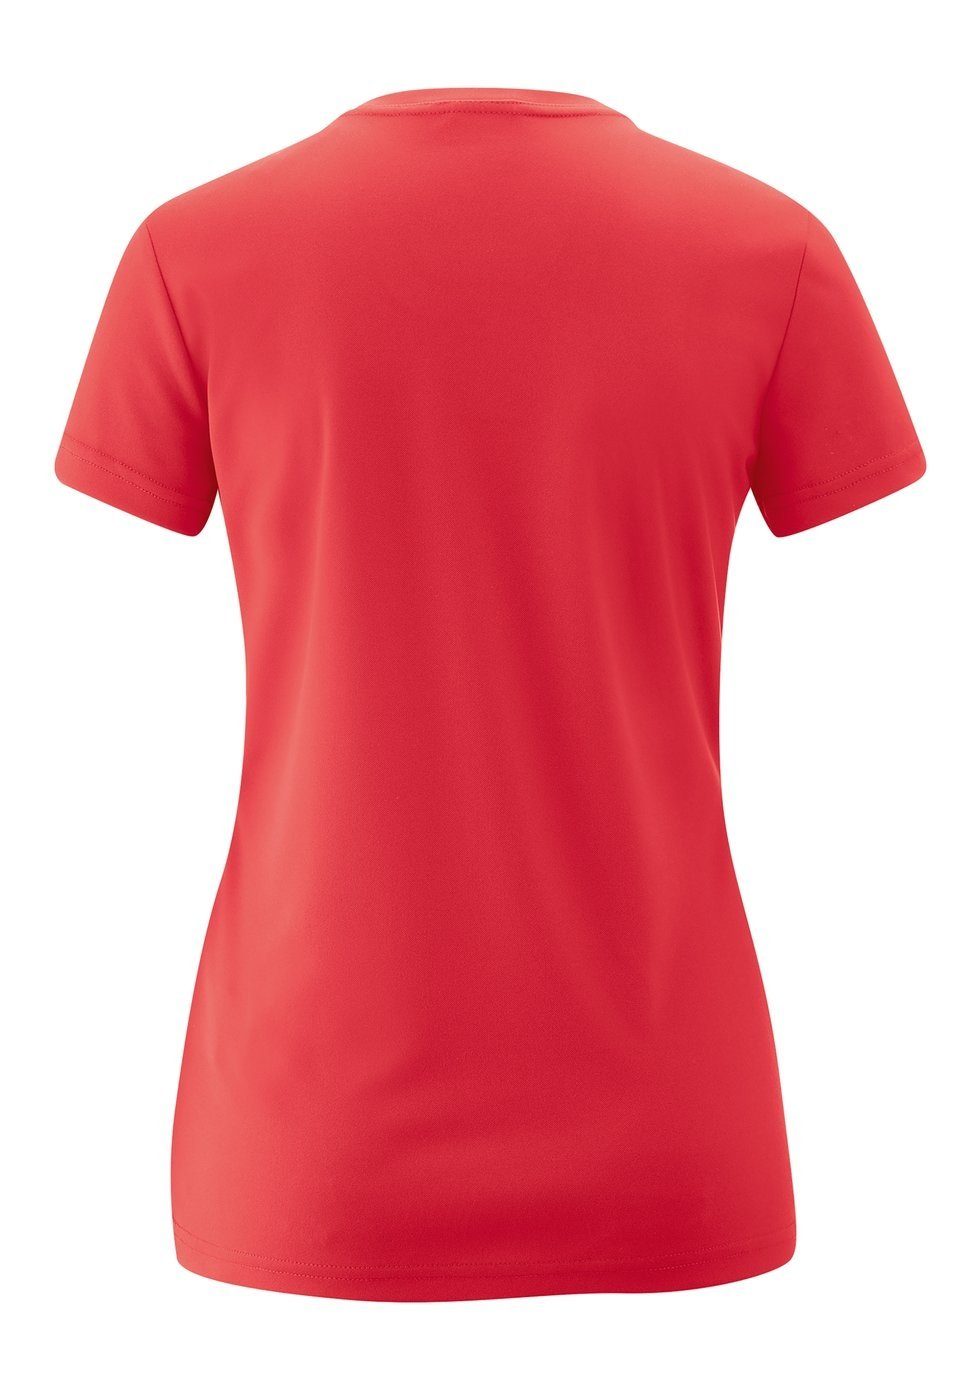 Sports Trudy Maier Da. Maier 252310 Sports hibiscus T-Shirt Laufshirt